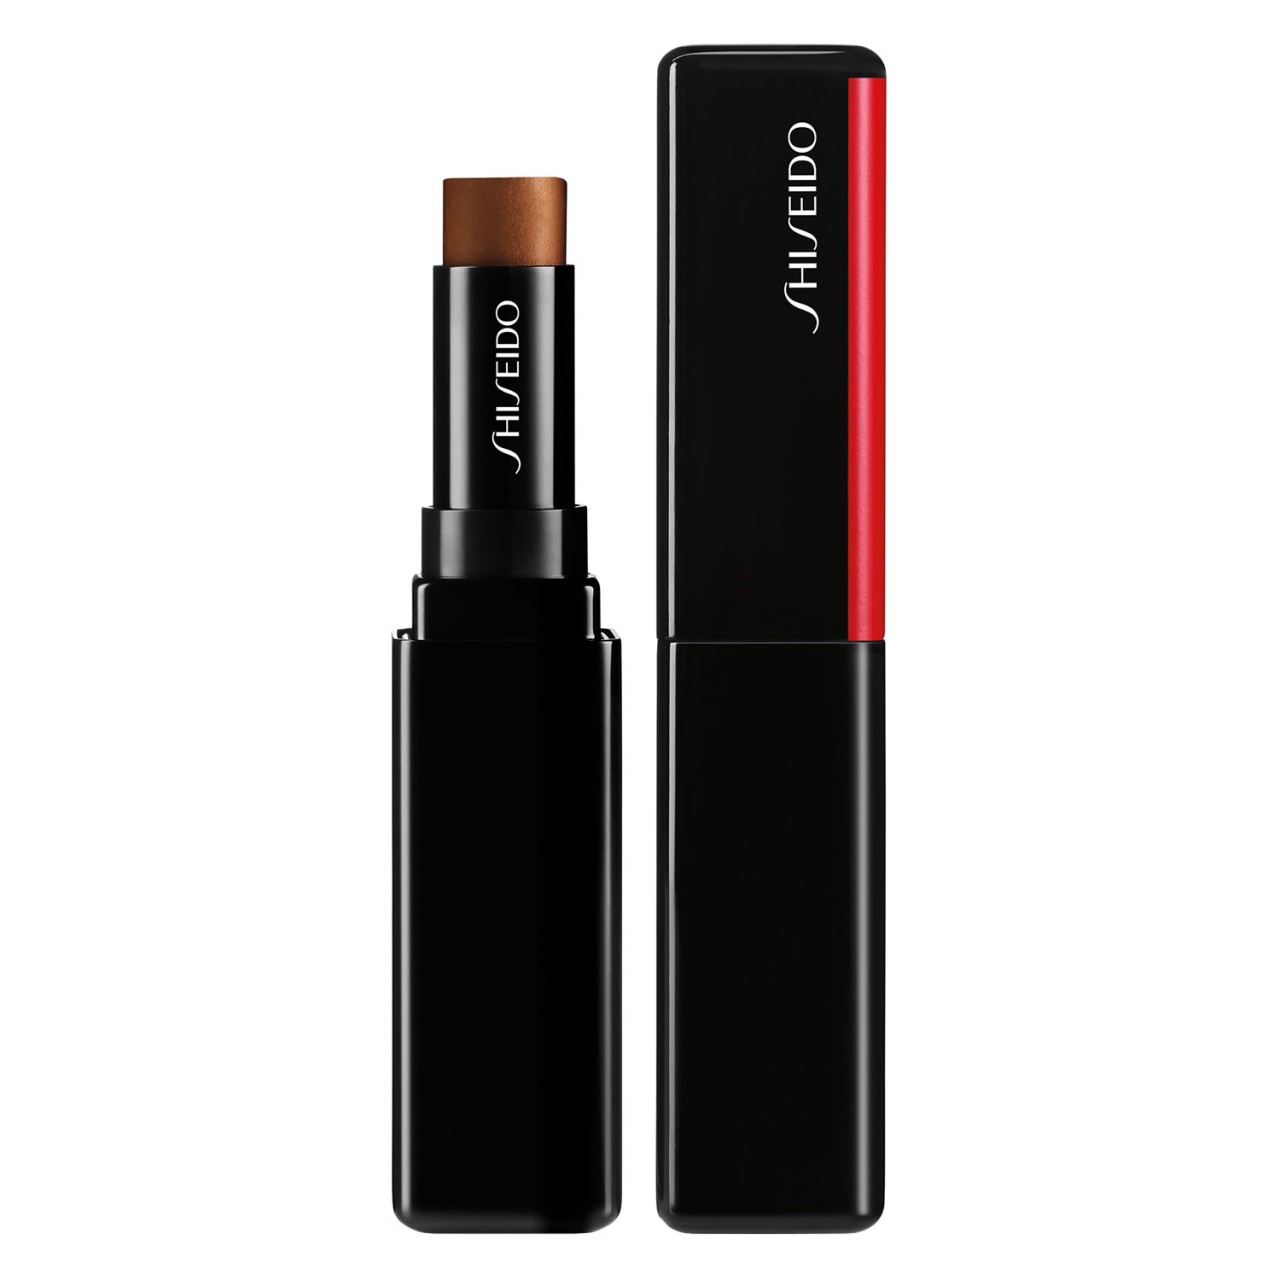 Synchro Skin - Correcting GelStick Concealer Deep 501 von Shiseido